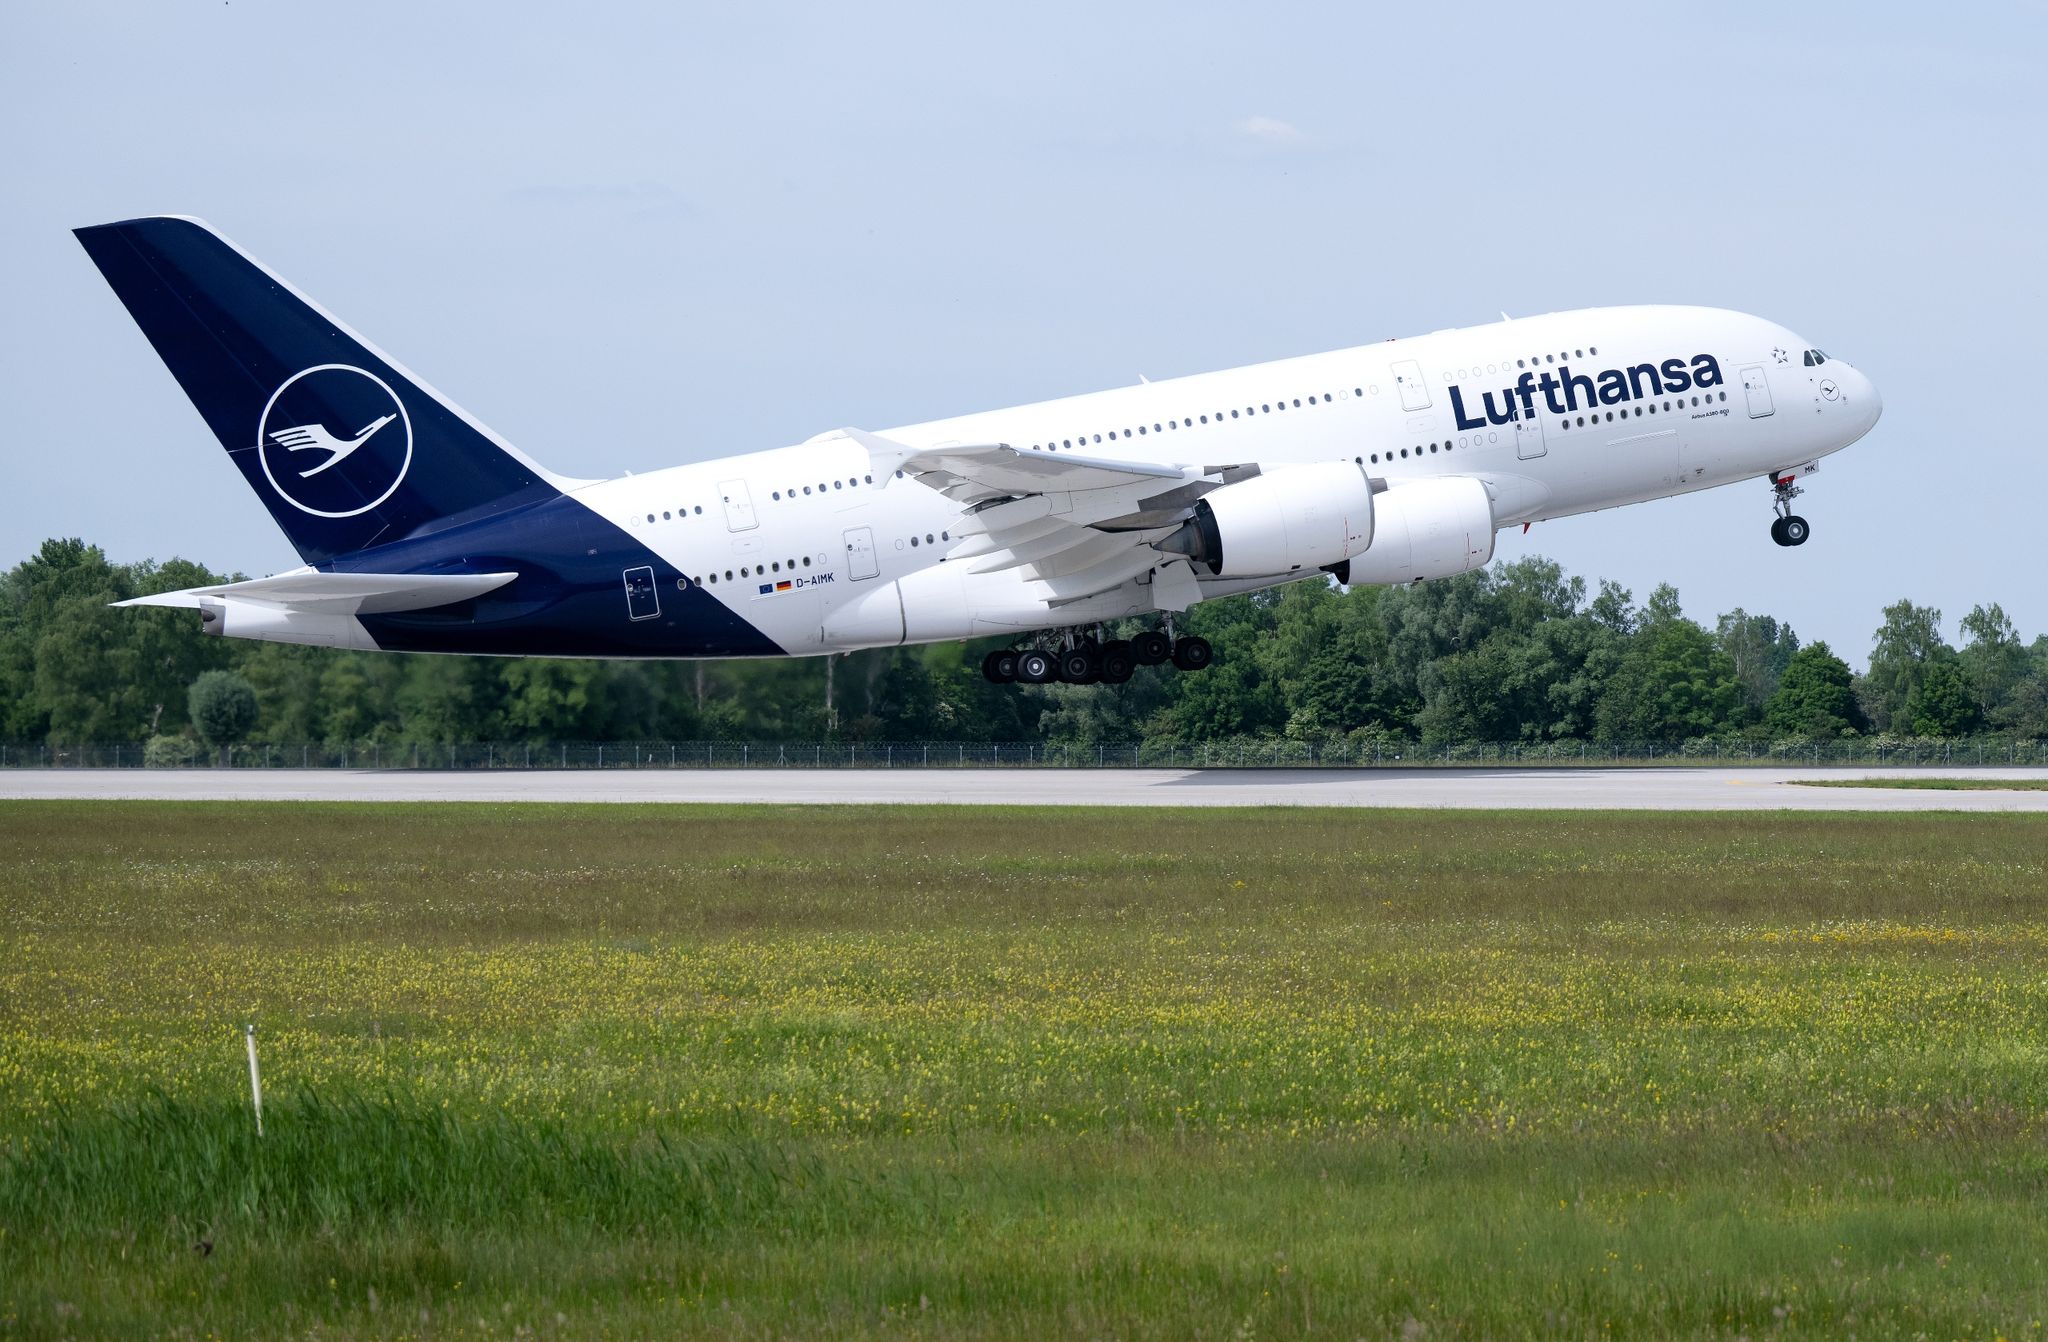 Eine Lufthansa-Maschine des Typs Airbus A380 startet auf dem Flughafen nach Boston.